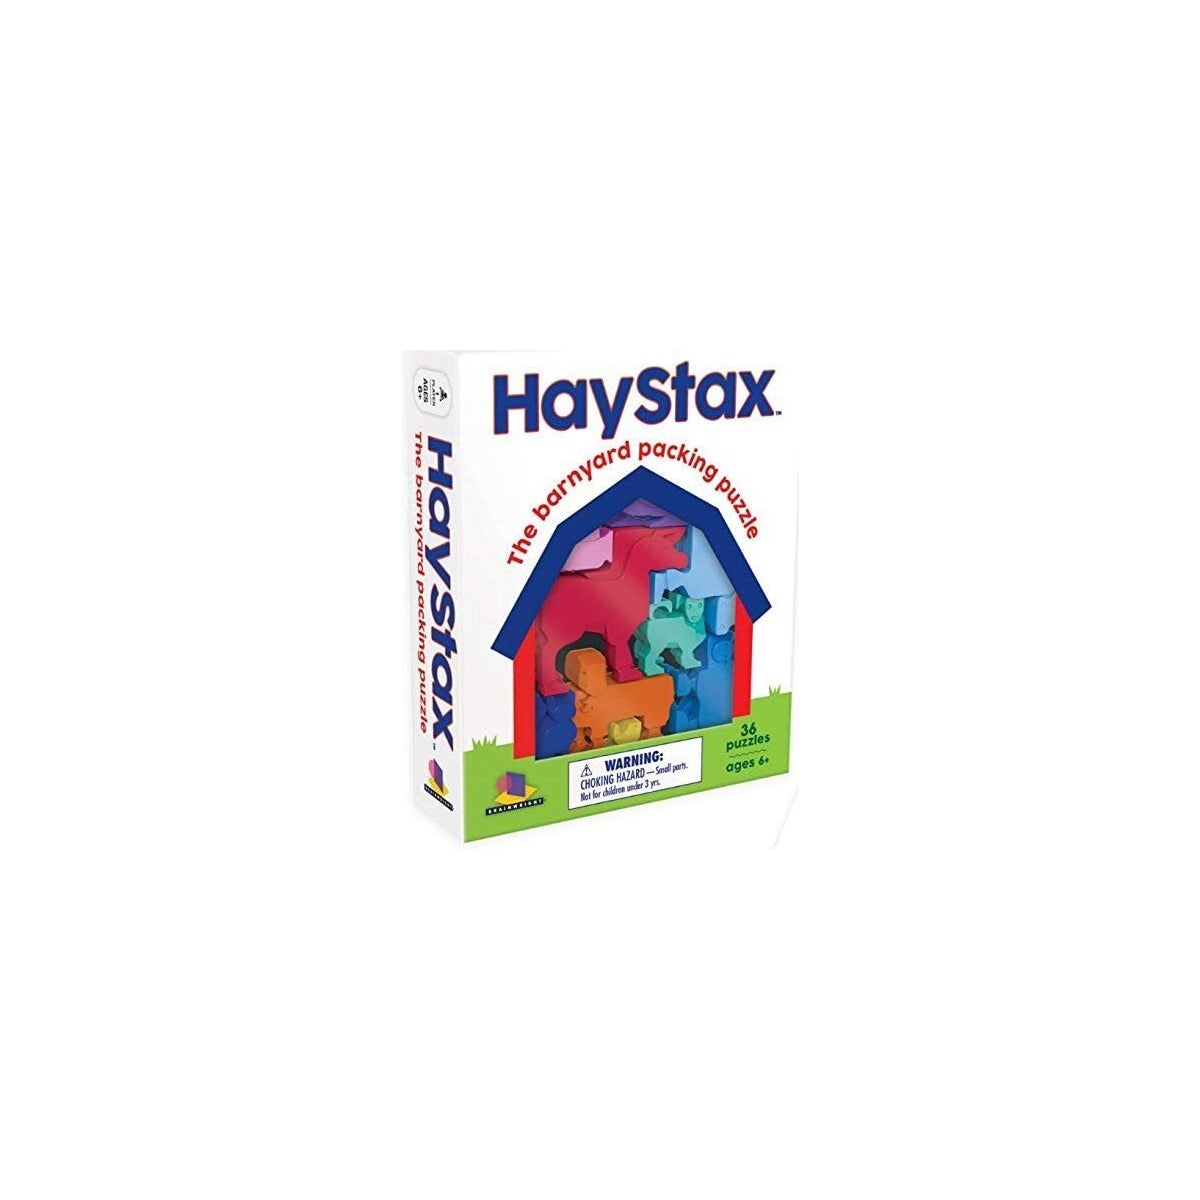 HAYSTAX (6) ENG